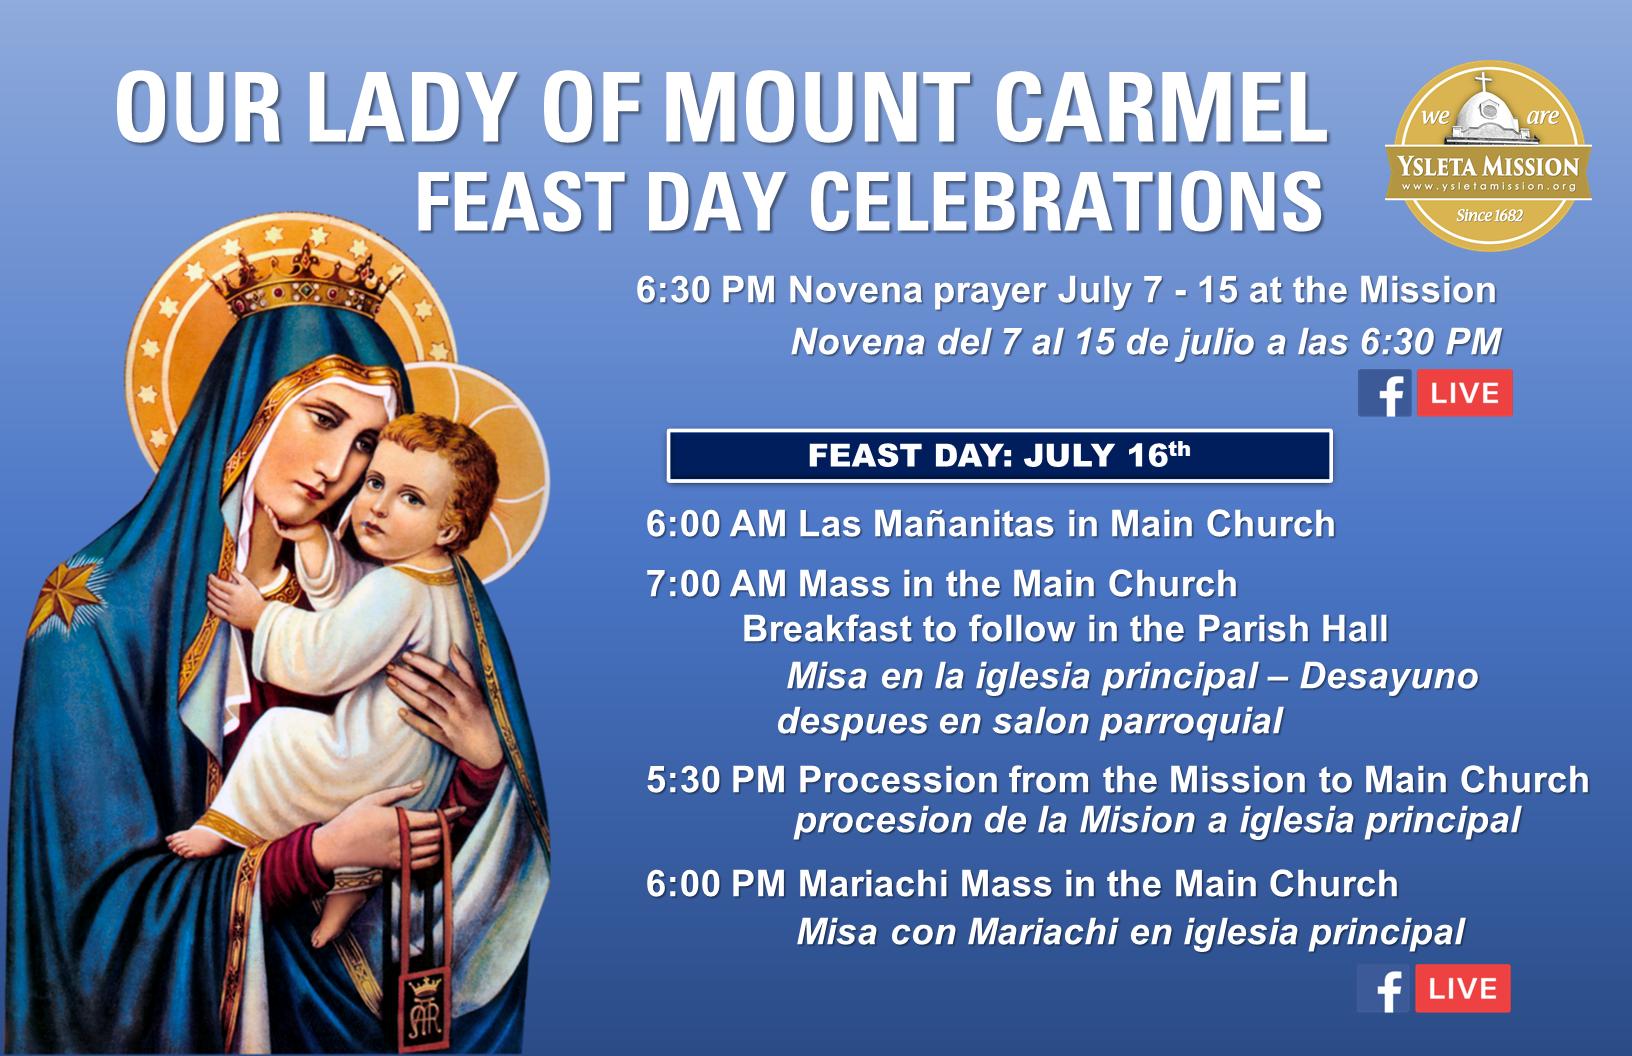 Mount Carmel Feast Day celebrations